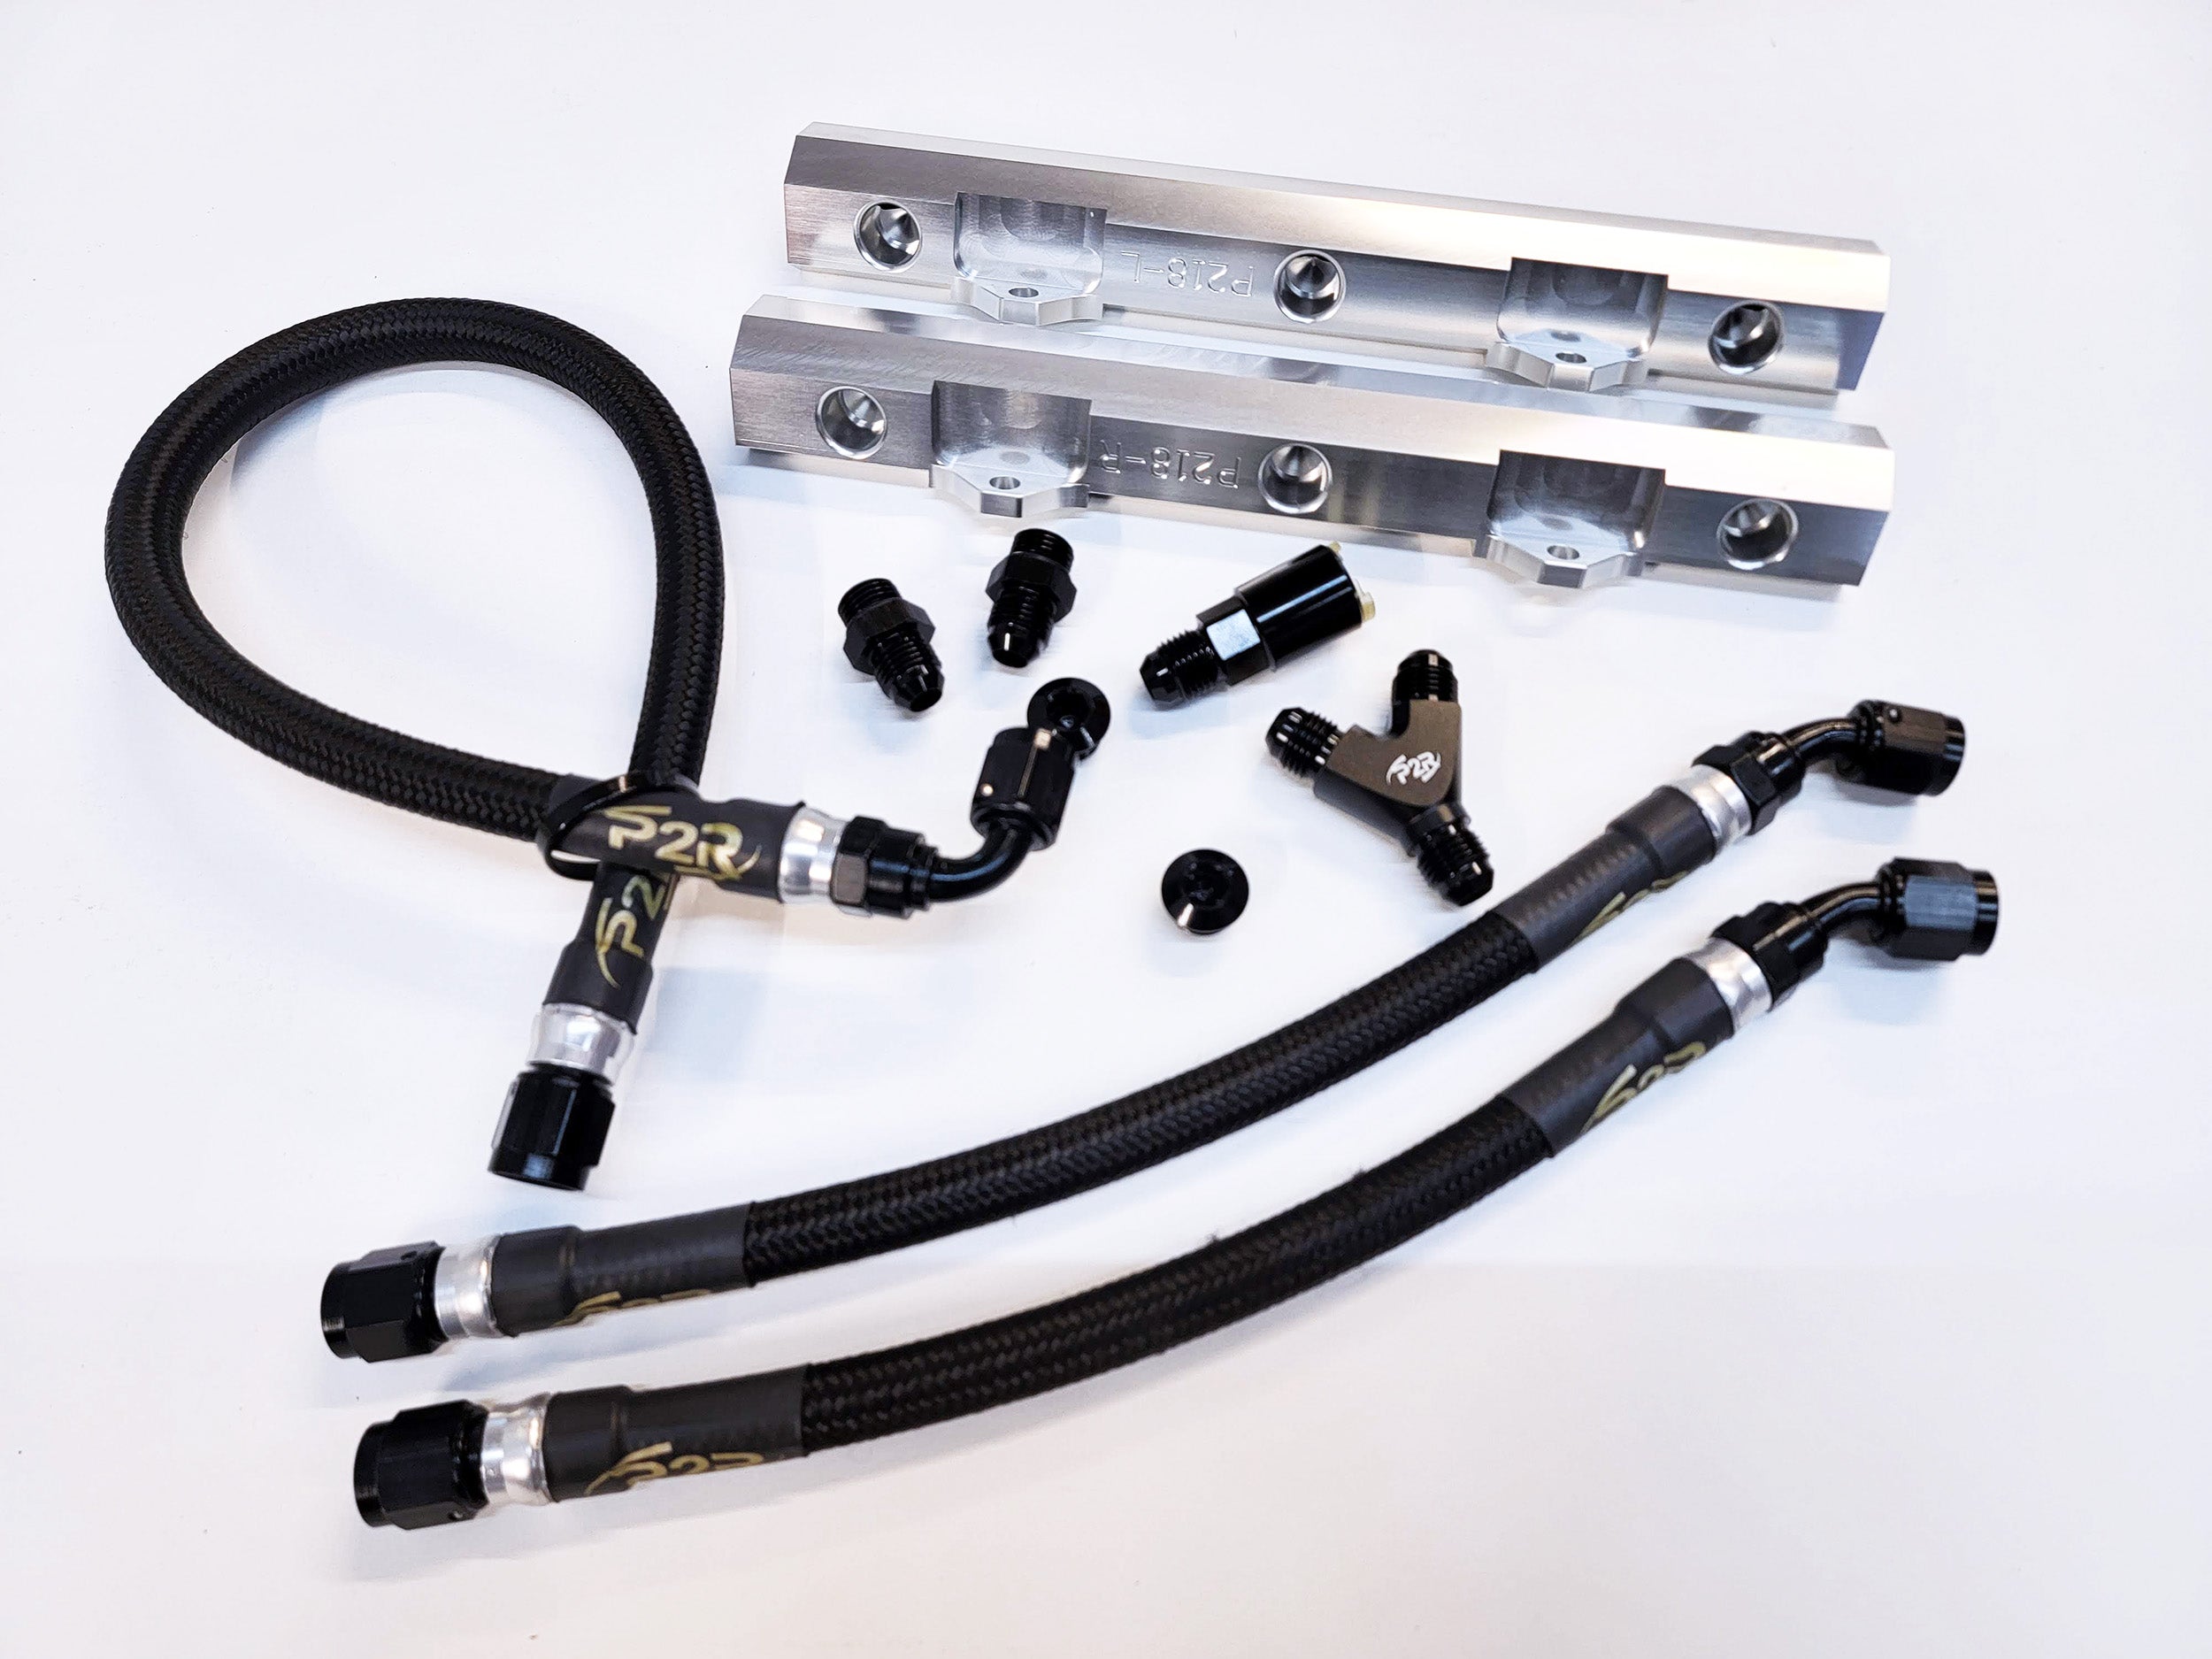 P2R Plug & Play Fuel Rail Kit for 2013-2017 Accord V6